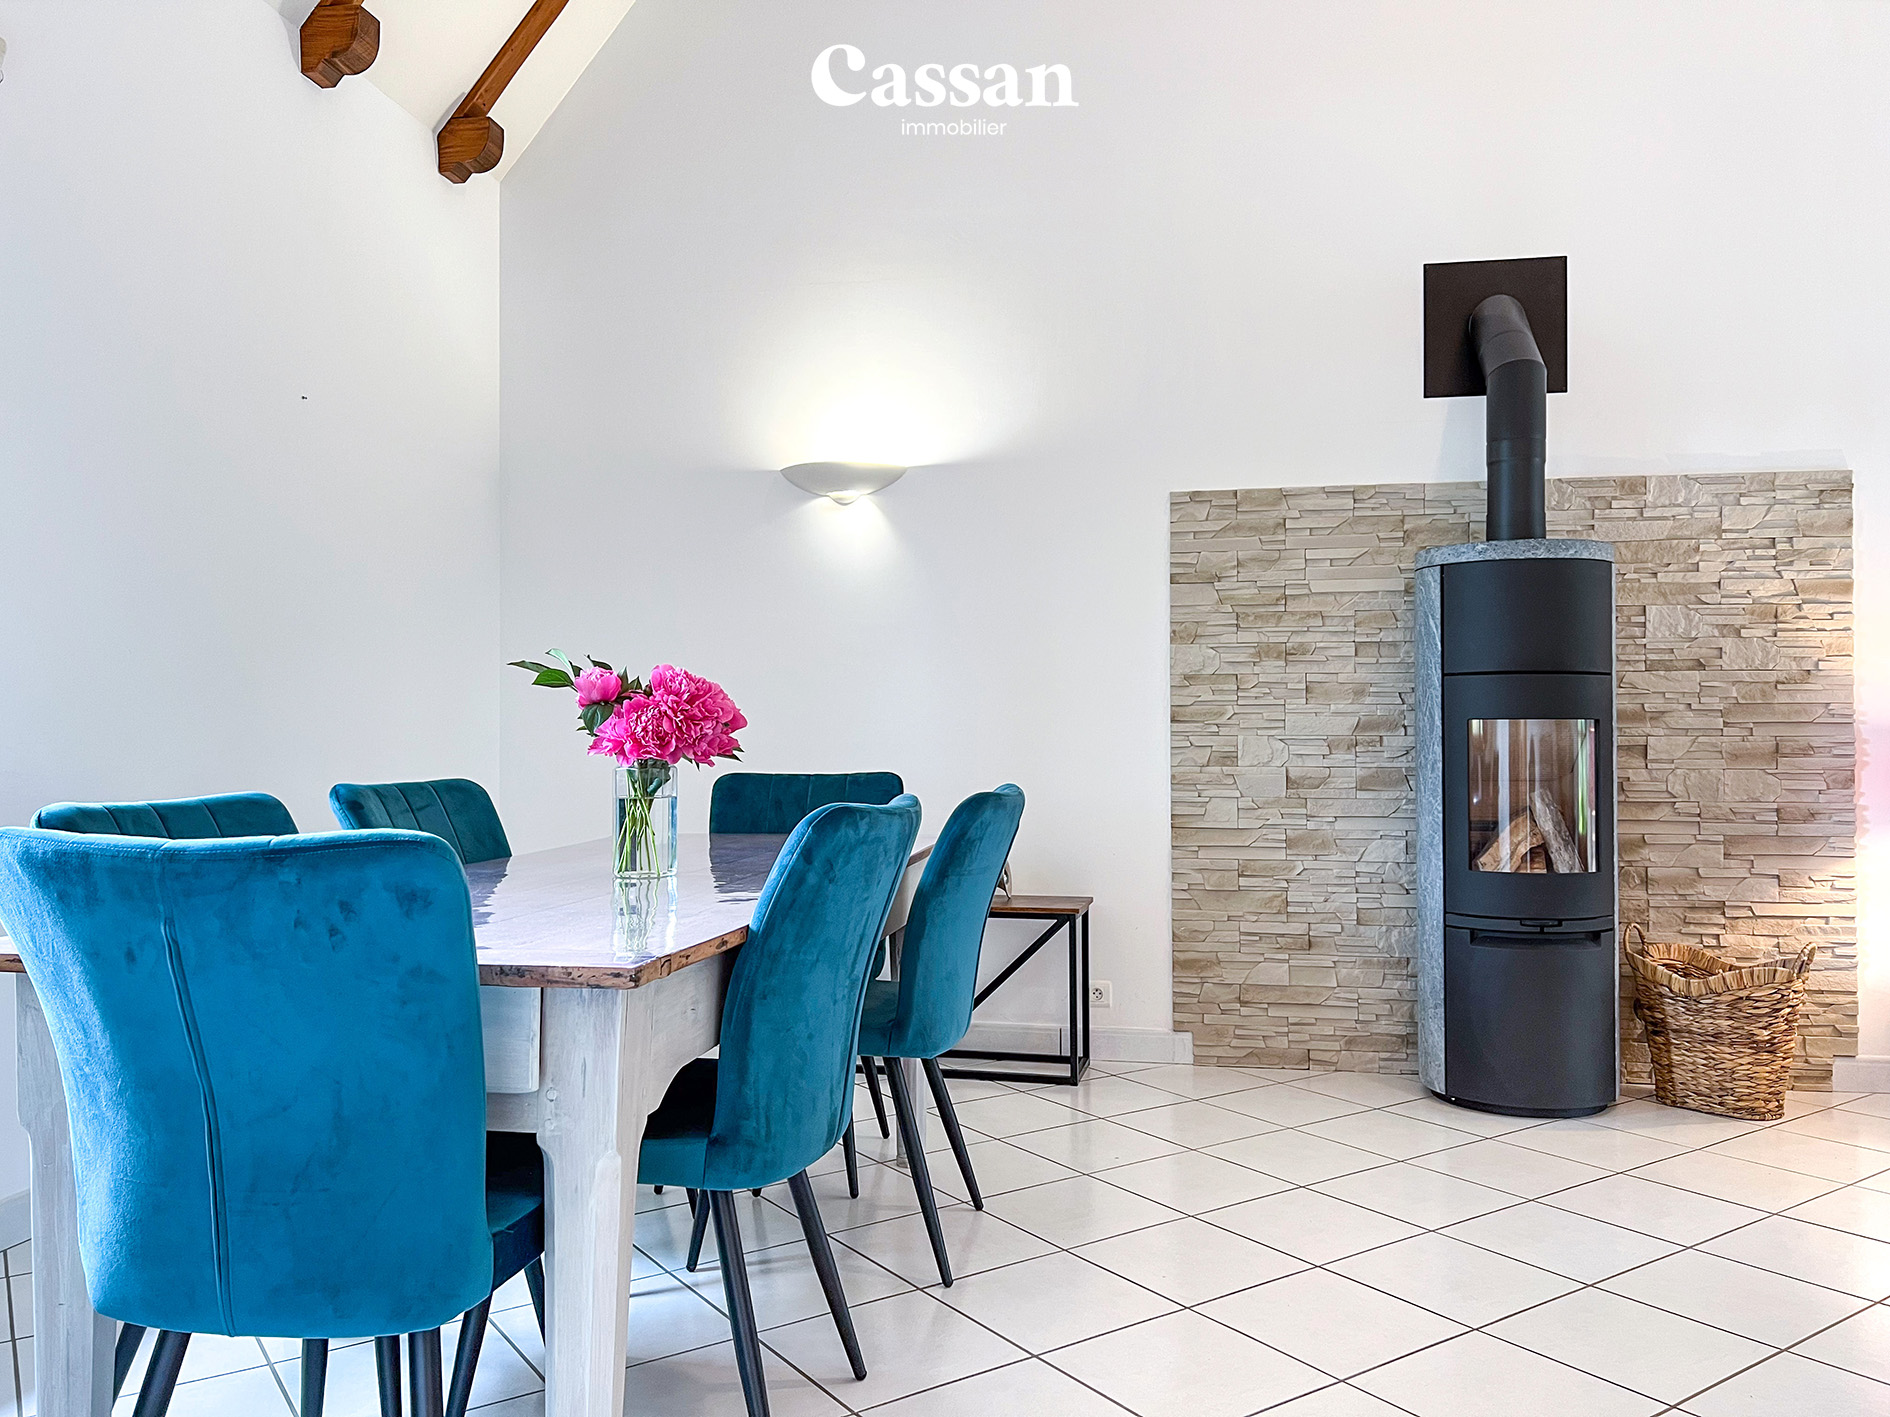 Séjour maison à vendre Sansac de Marmiesse Cassan immobilier